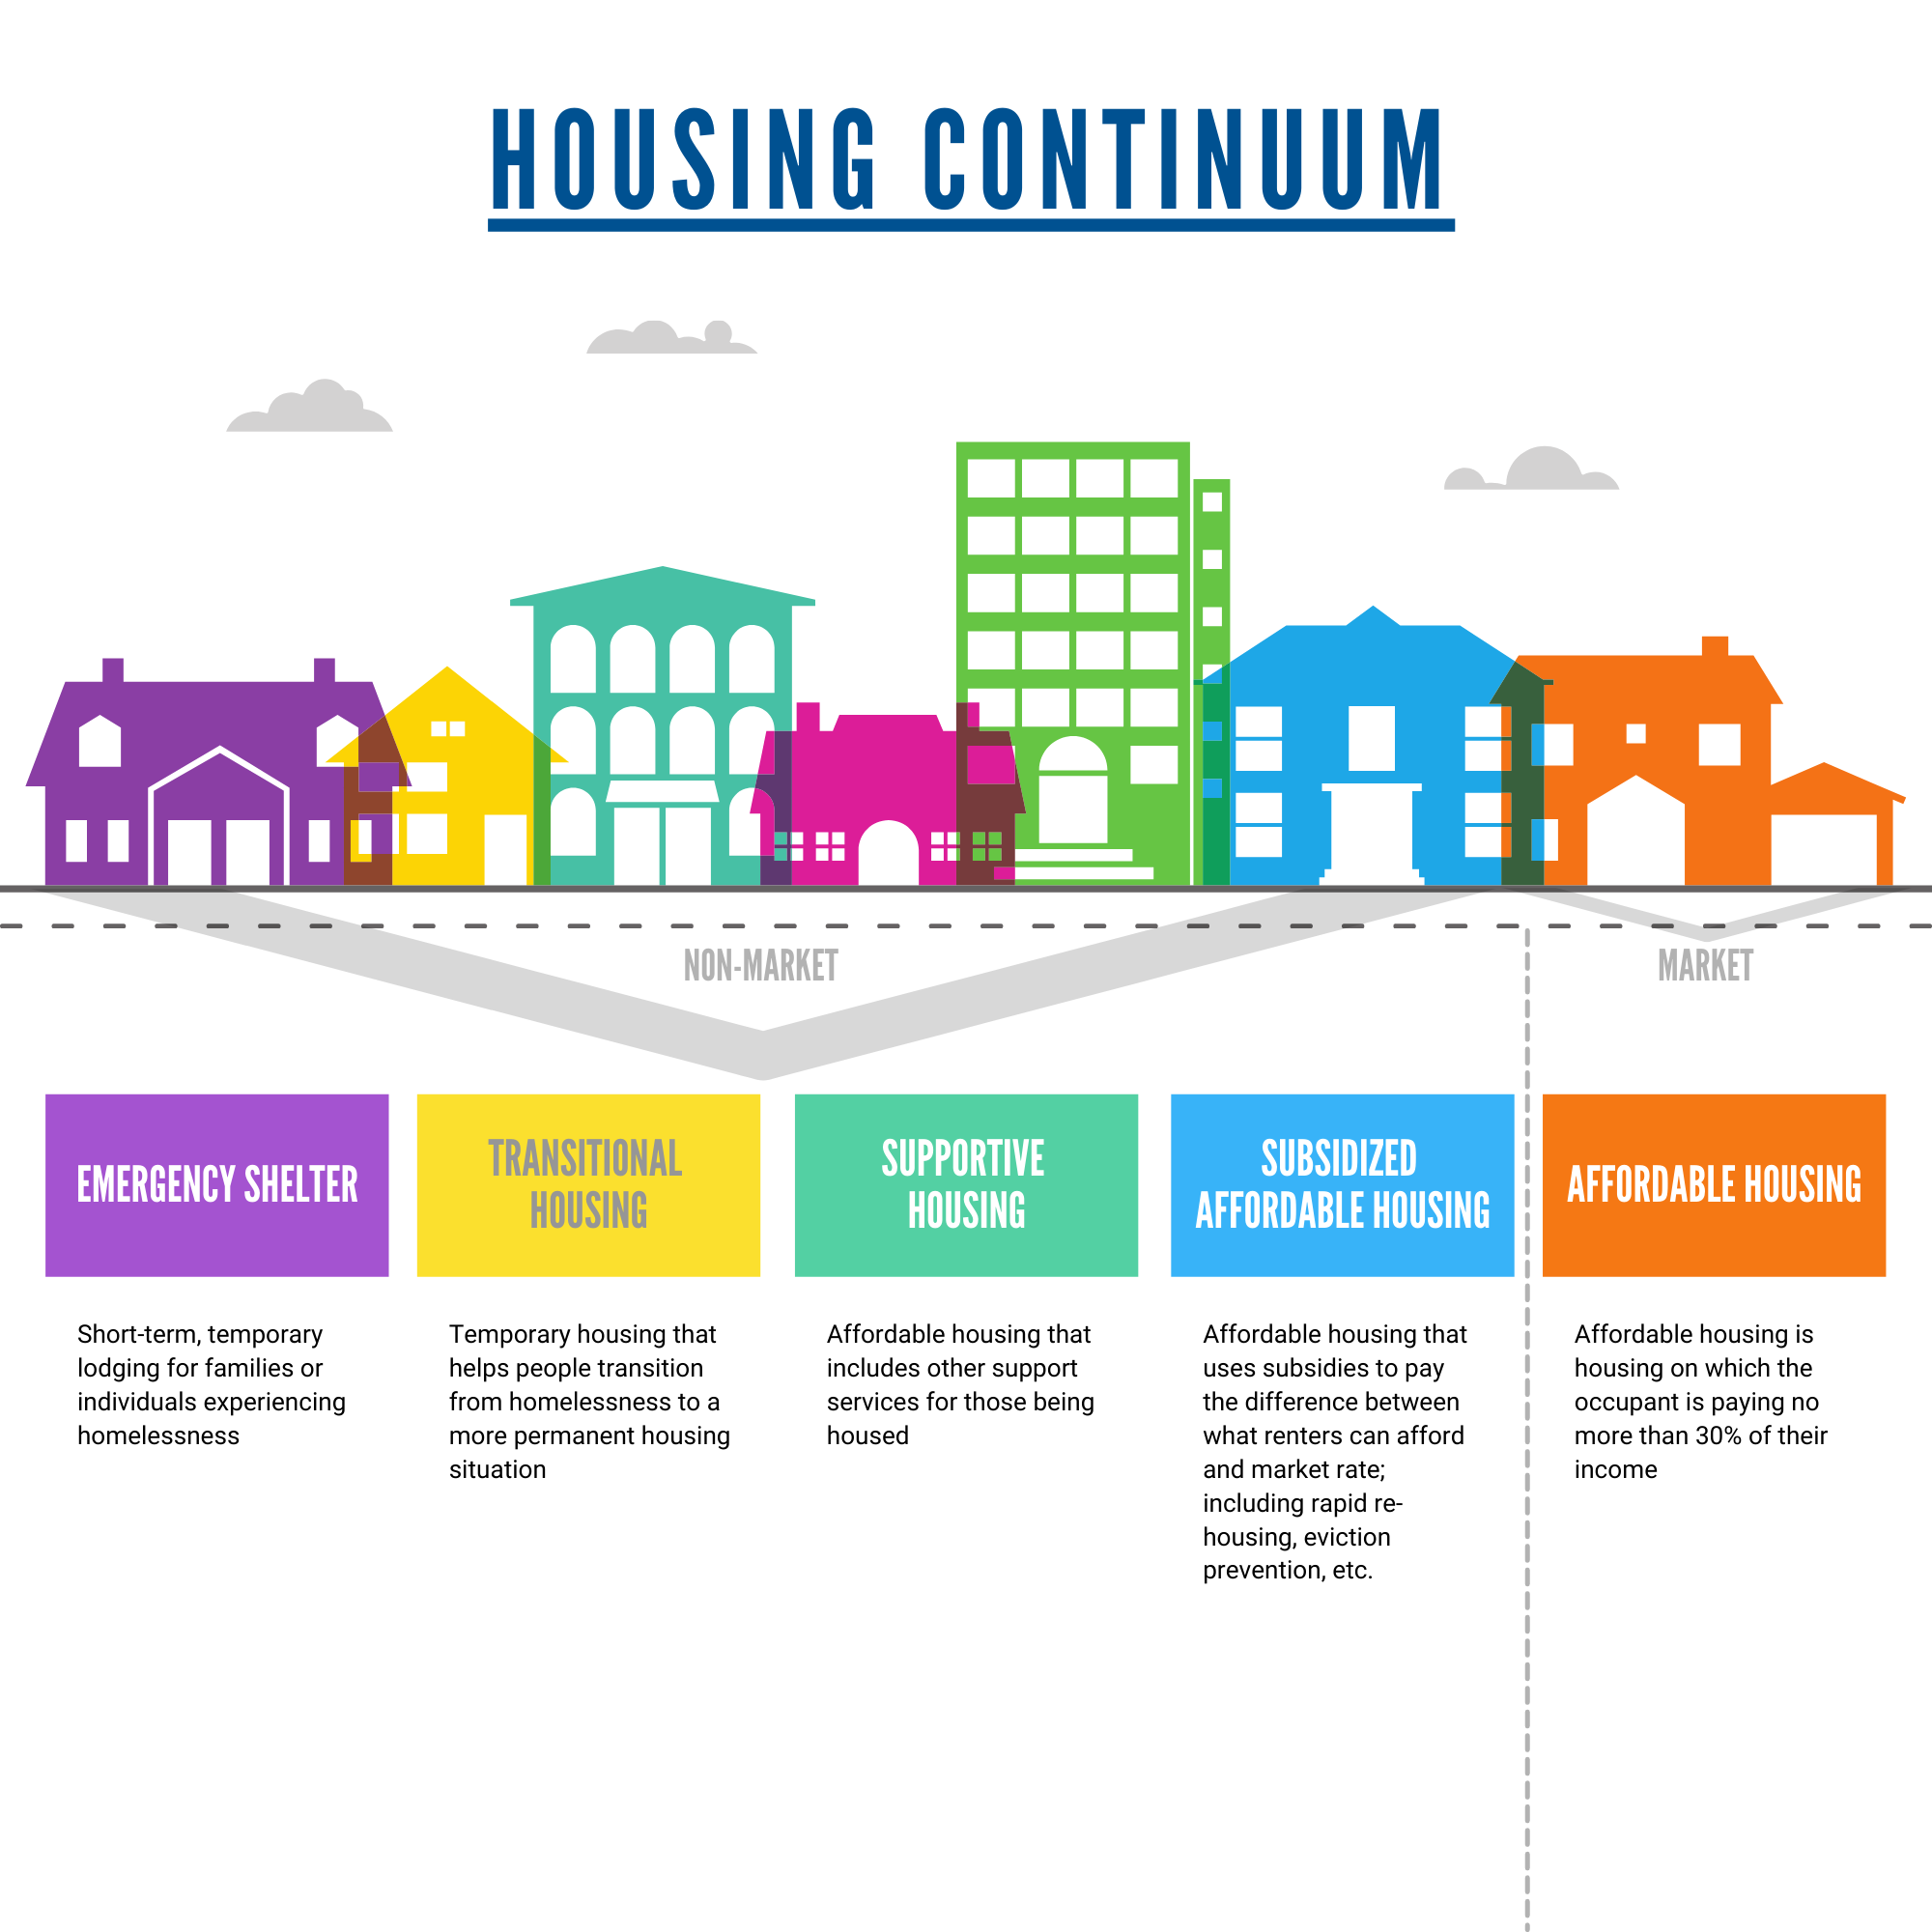 Housing Continuum Image